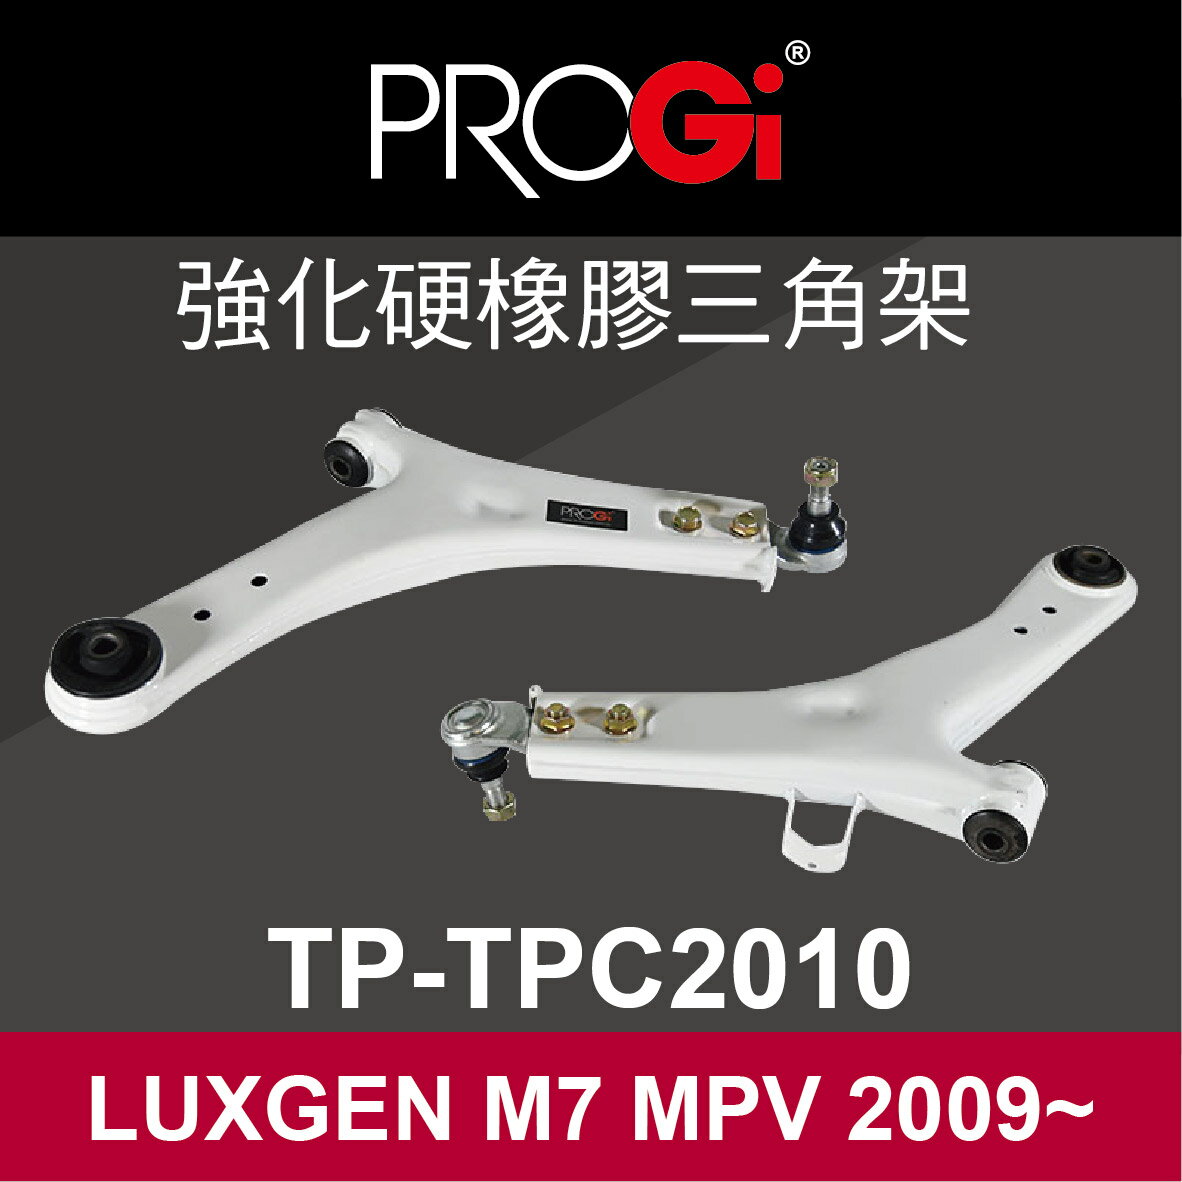 真便宜 [預購]PROGi TP-TPC2010 強化硬橡膠三角架(LUXGEN M7 MPV 2009~)